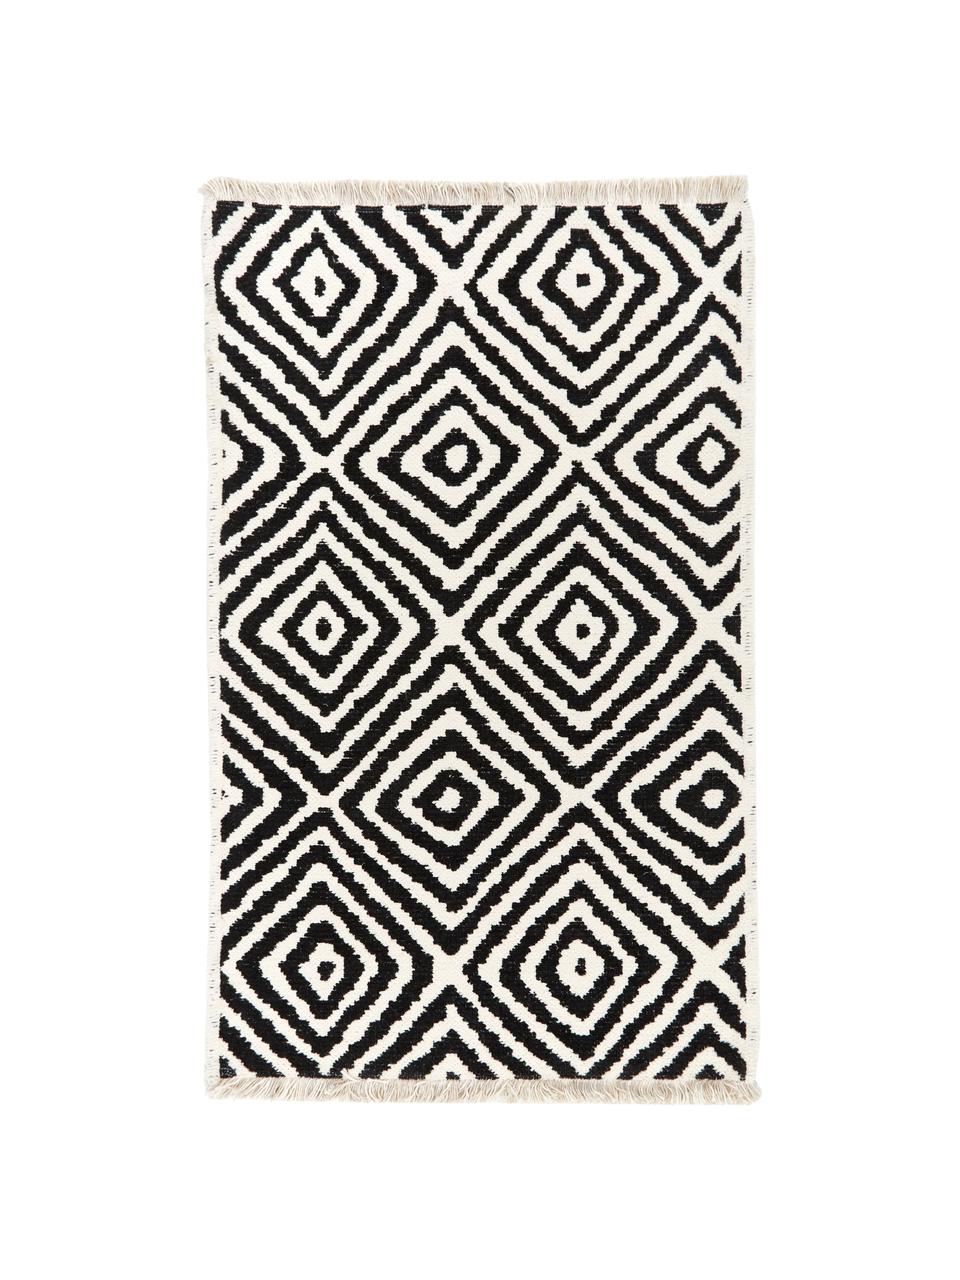 Dywan kilim Mozaik, 90% bawełna, 10% poliester, Czarny, S 120 x D 180 cm (Rozmiar S)